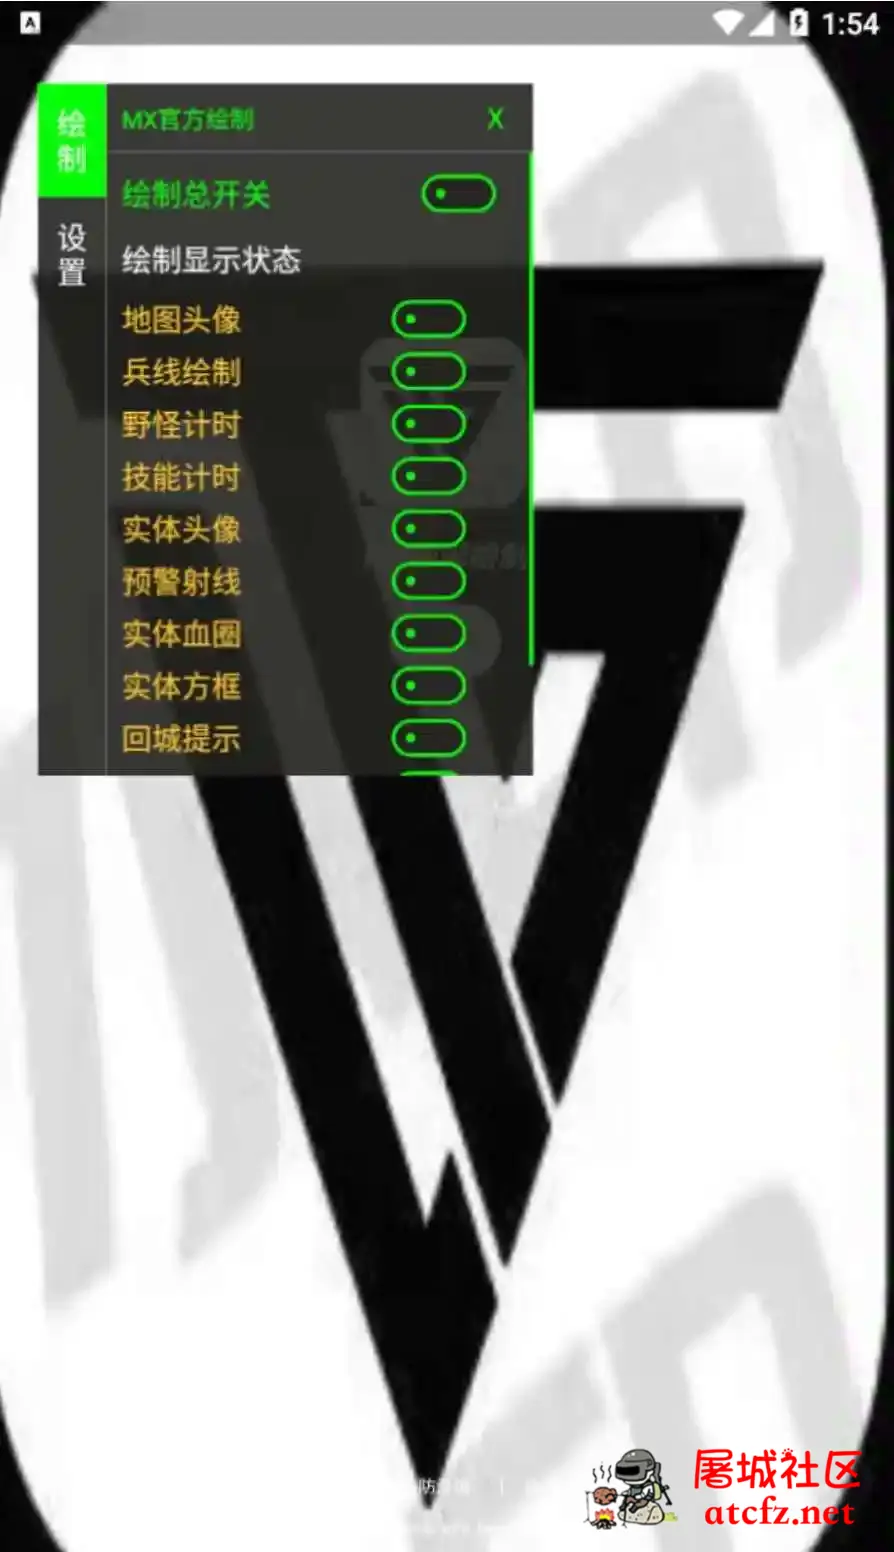 王者荣耀MX绘制透视CD野怪计时插件破解版 屠城辅助网www.tcfz1.com7264